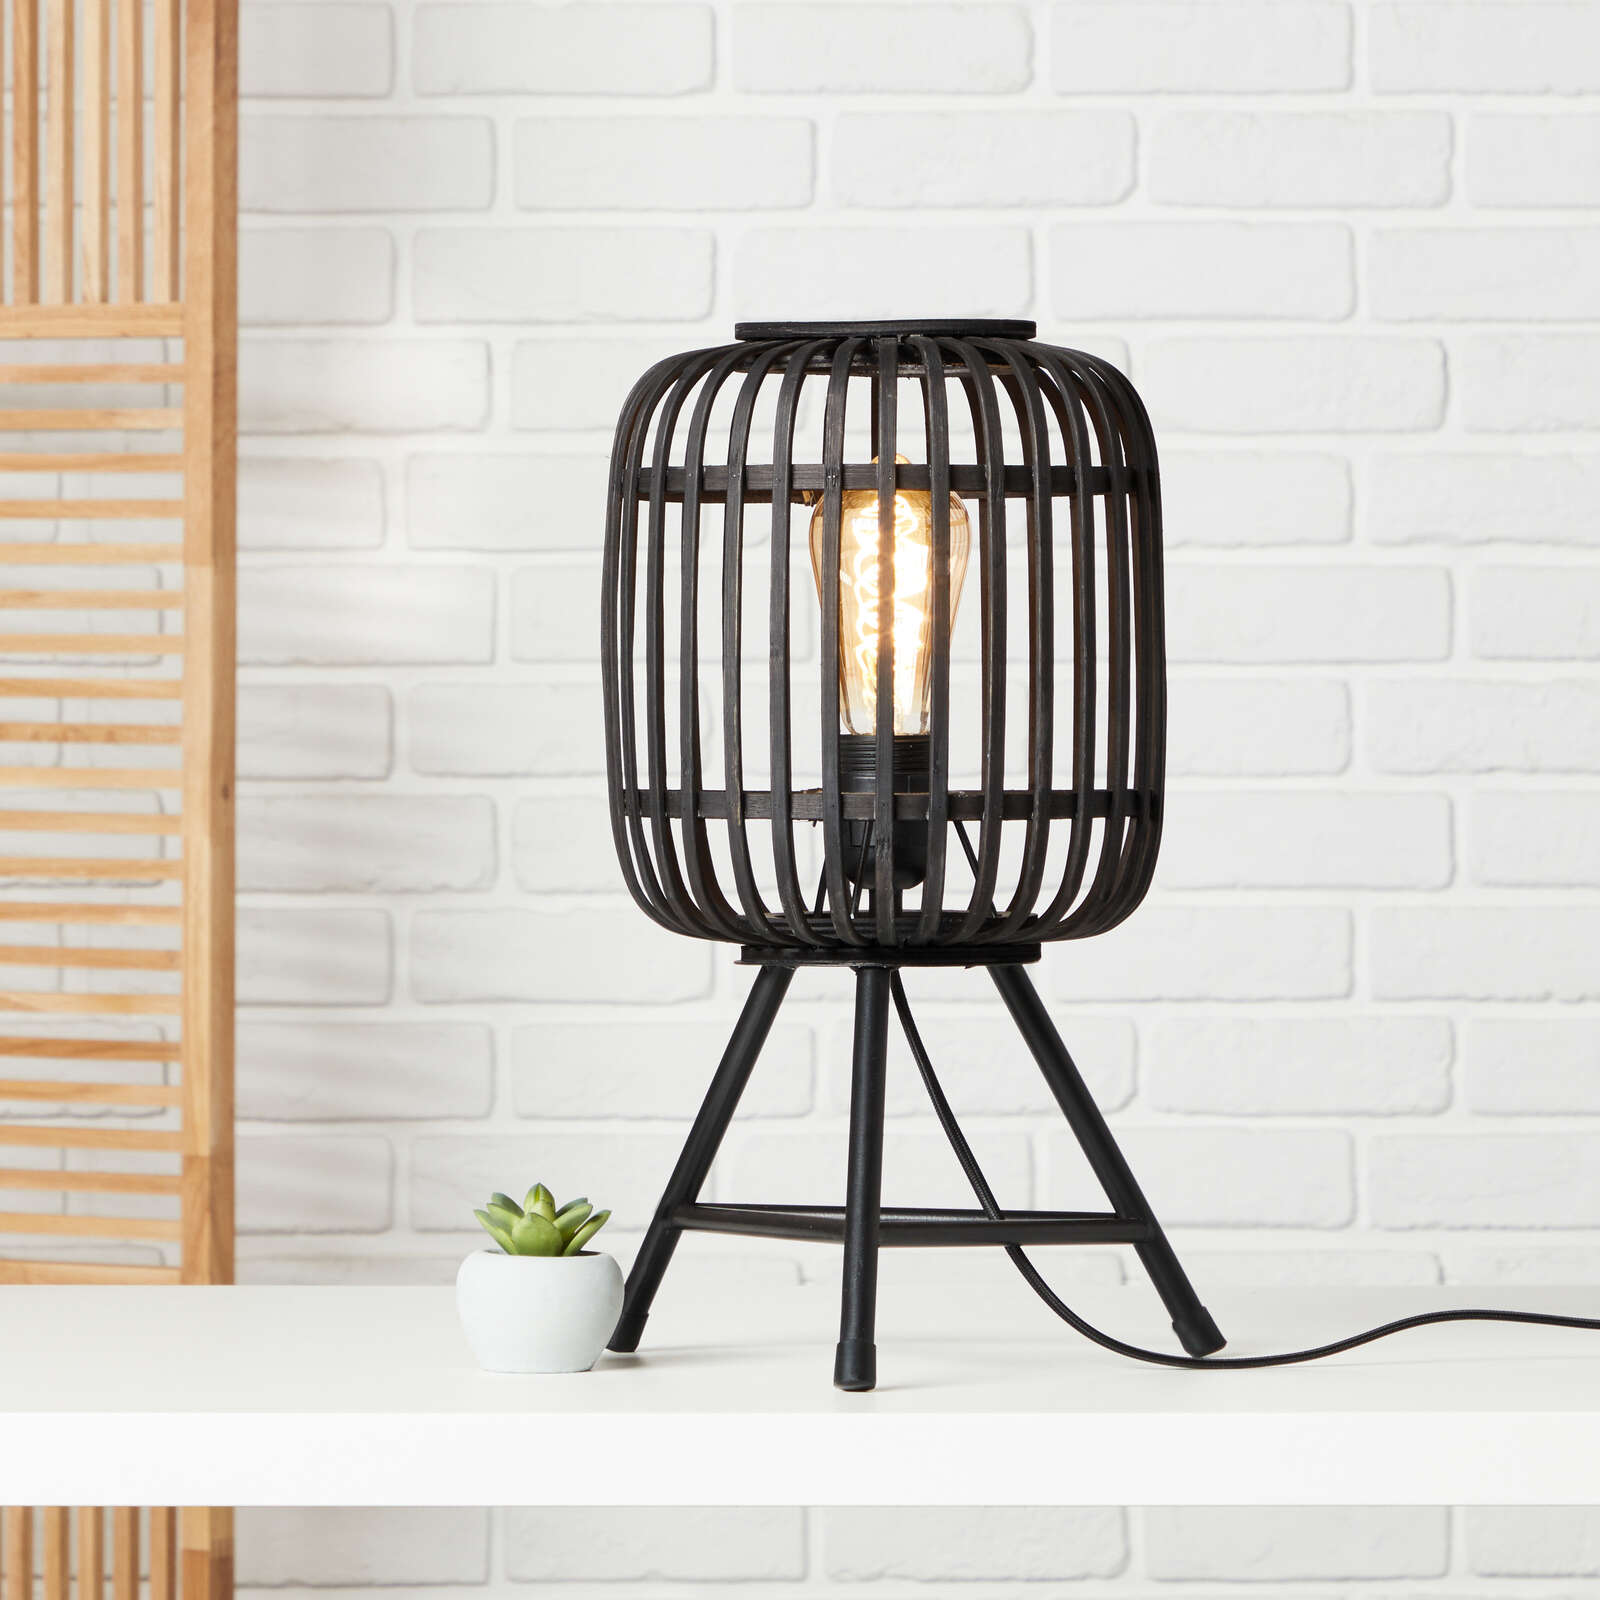             Lámpara de mesa de bambú - Willi 3 - Marrón
        